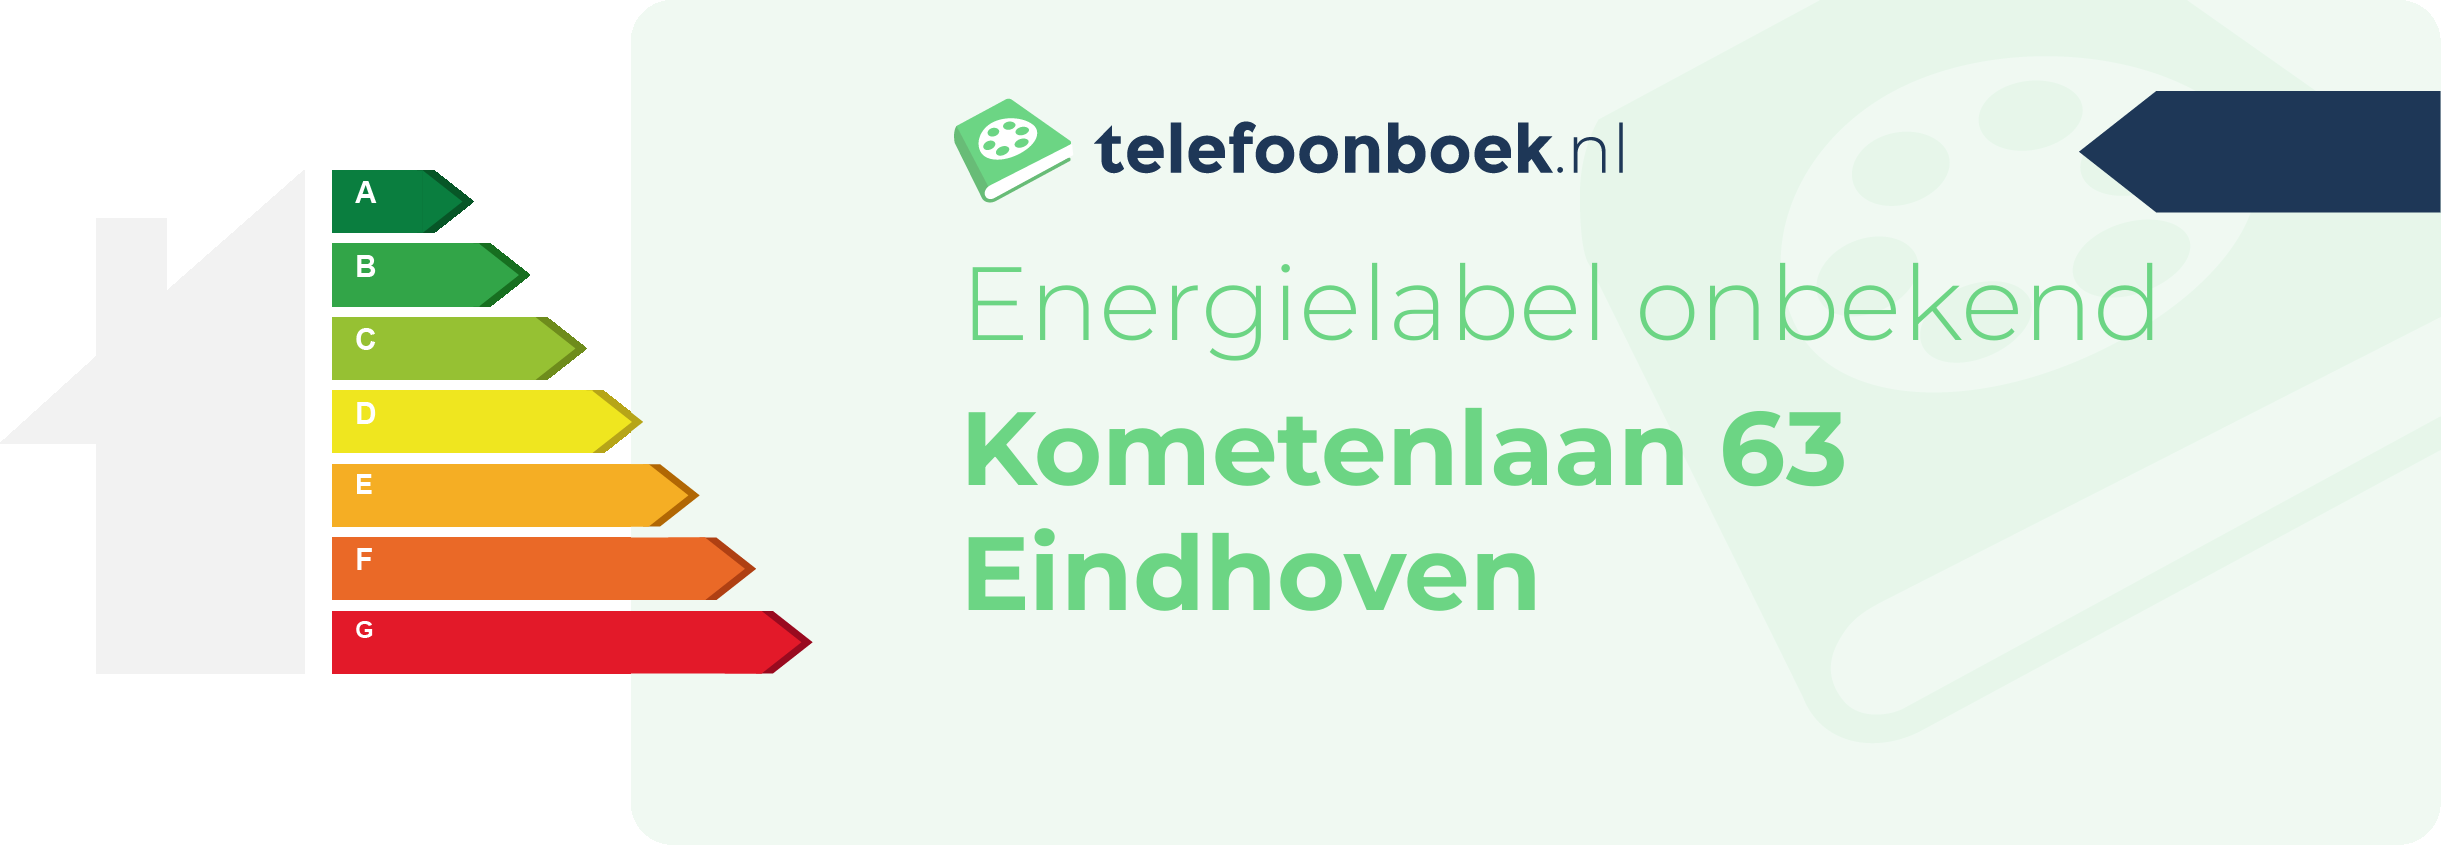 Energielabel Kometenlaan 63 Eindhoven